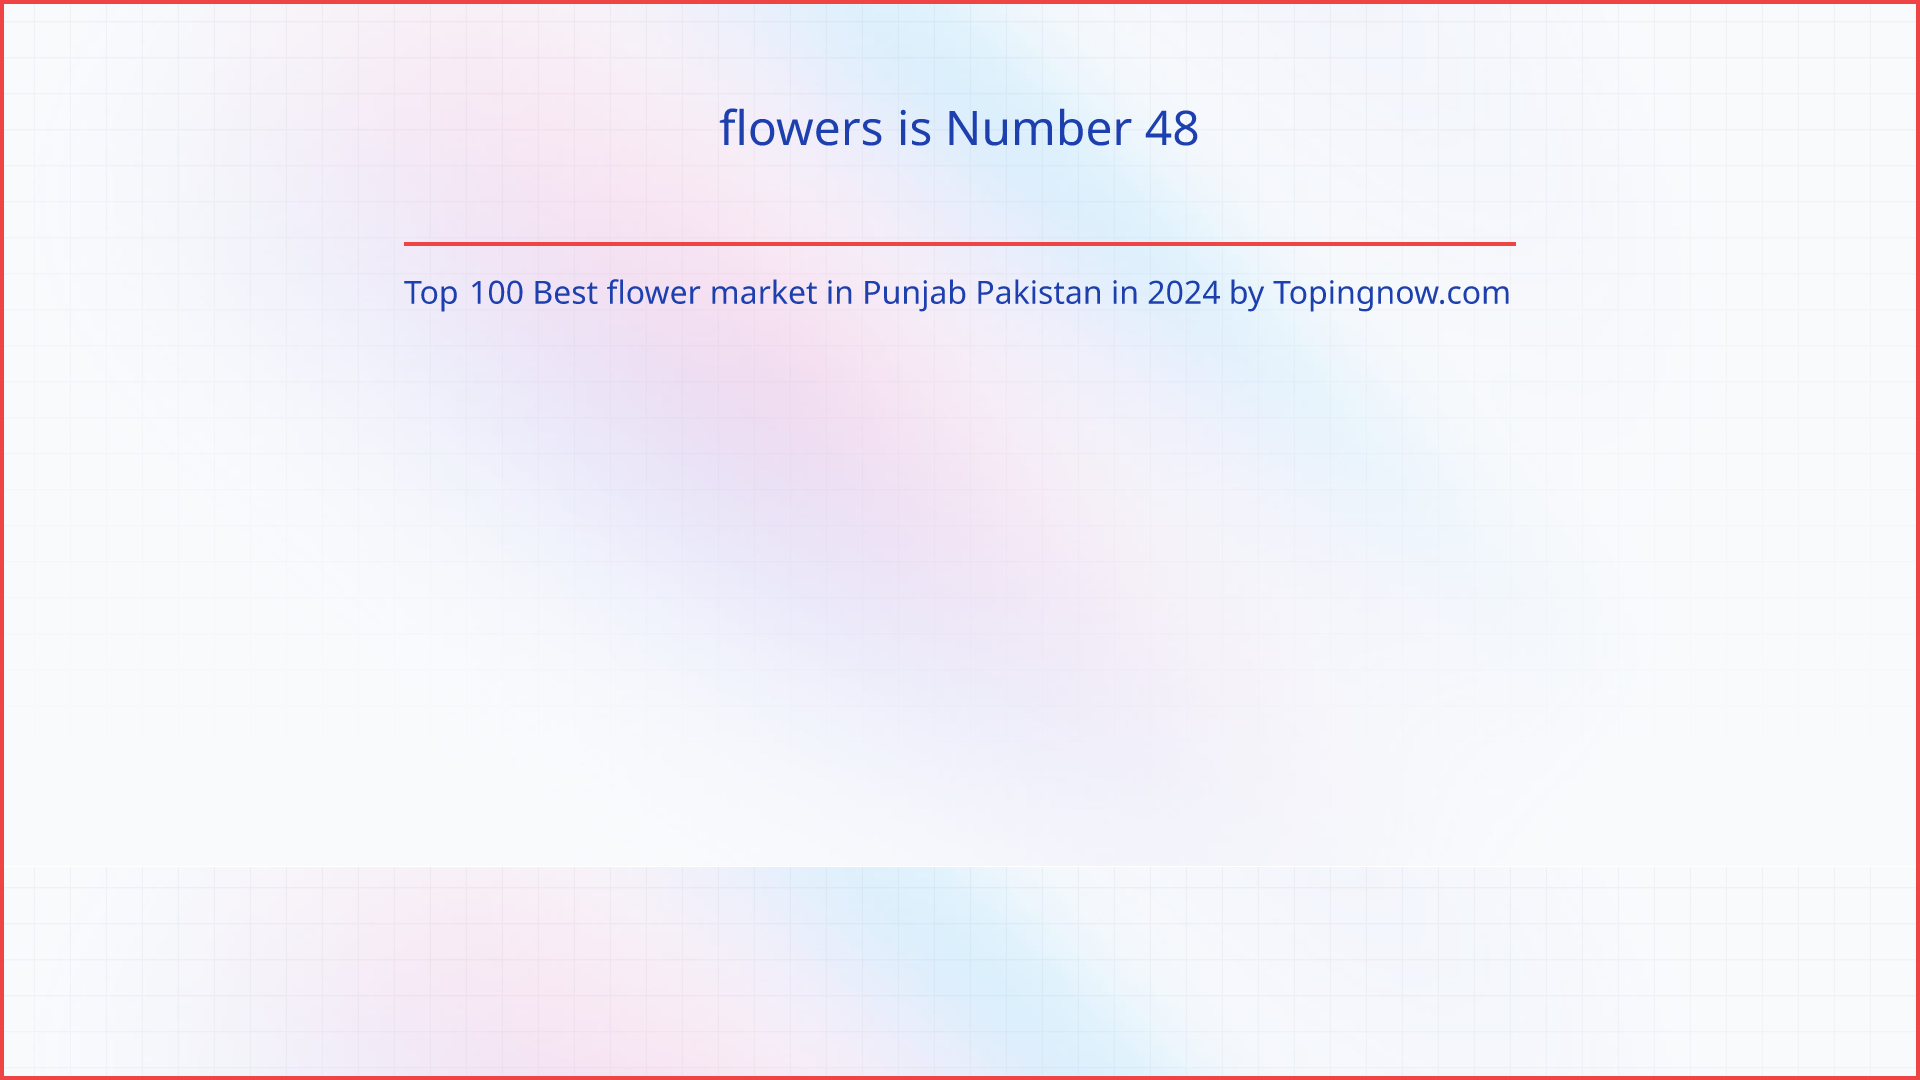 flowers: Top 100 Best flower market in Punjab Pakistan in 2024